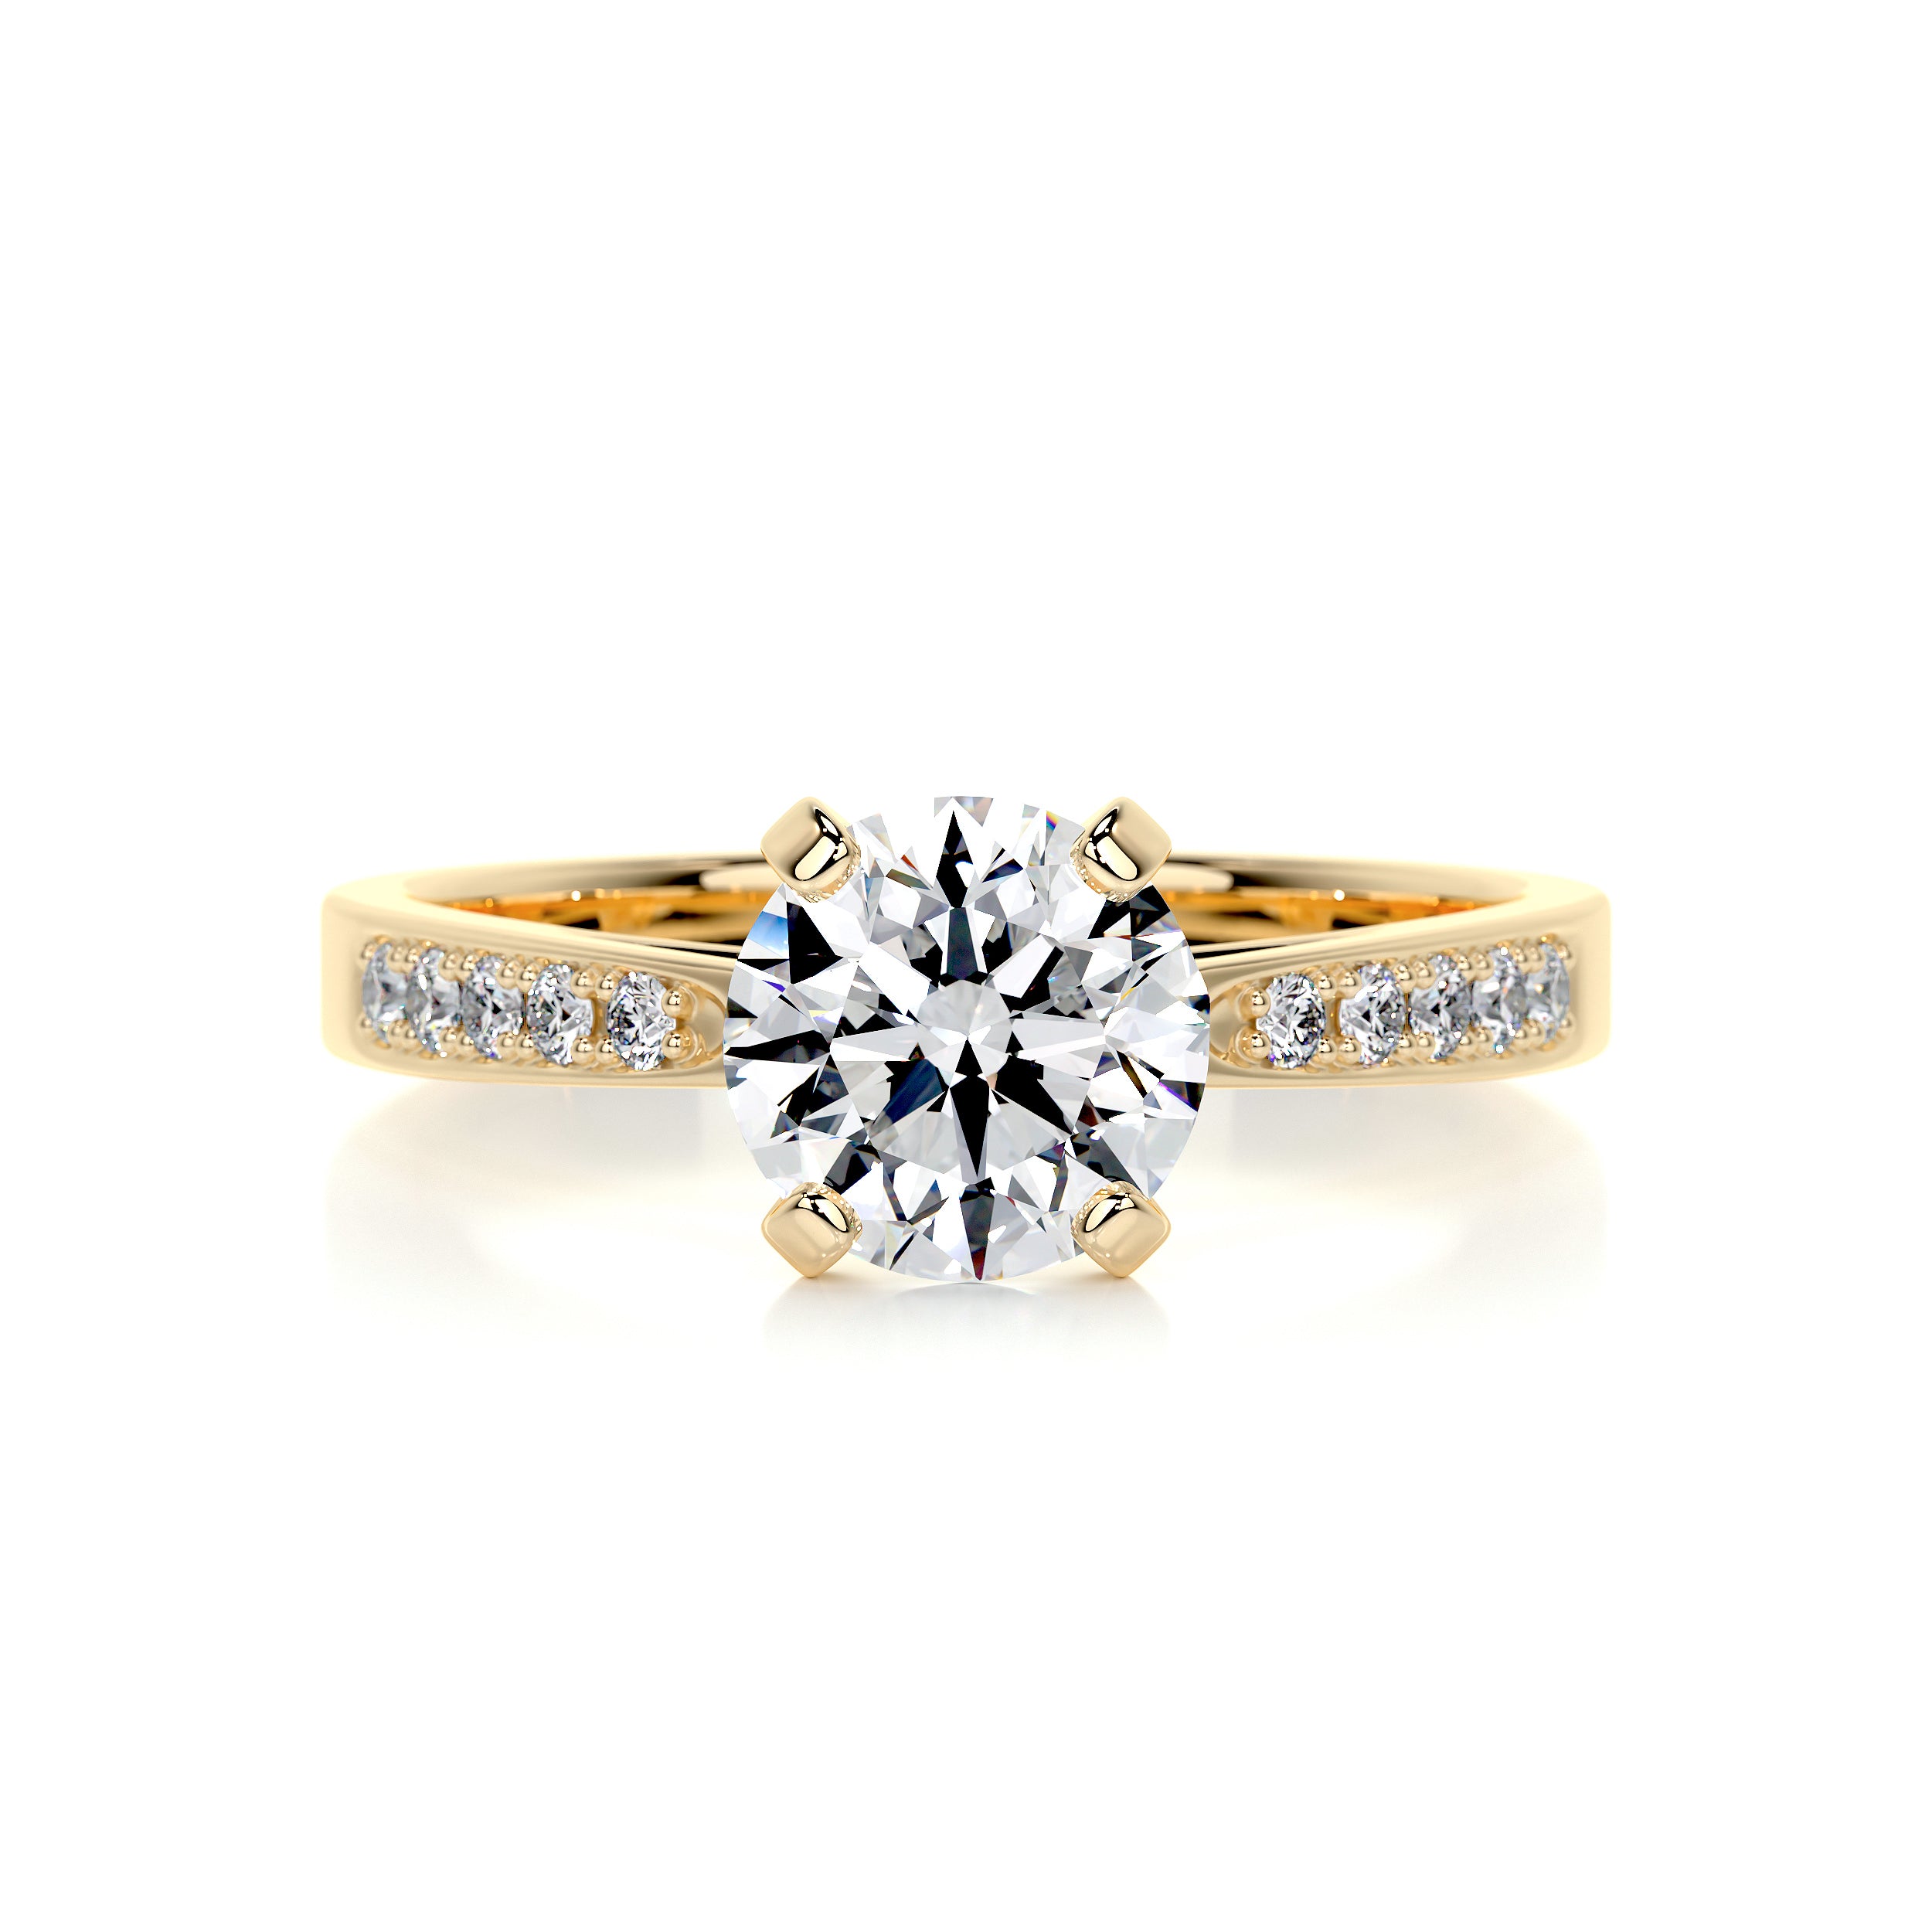 Margaret Diamond Engagement Ring   (1.35 Carat) -18K Yellow Gold